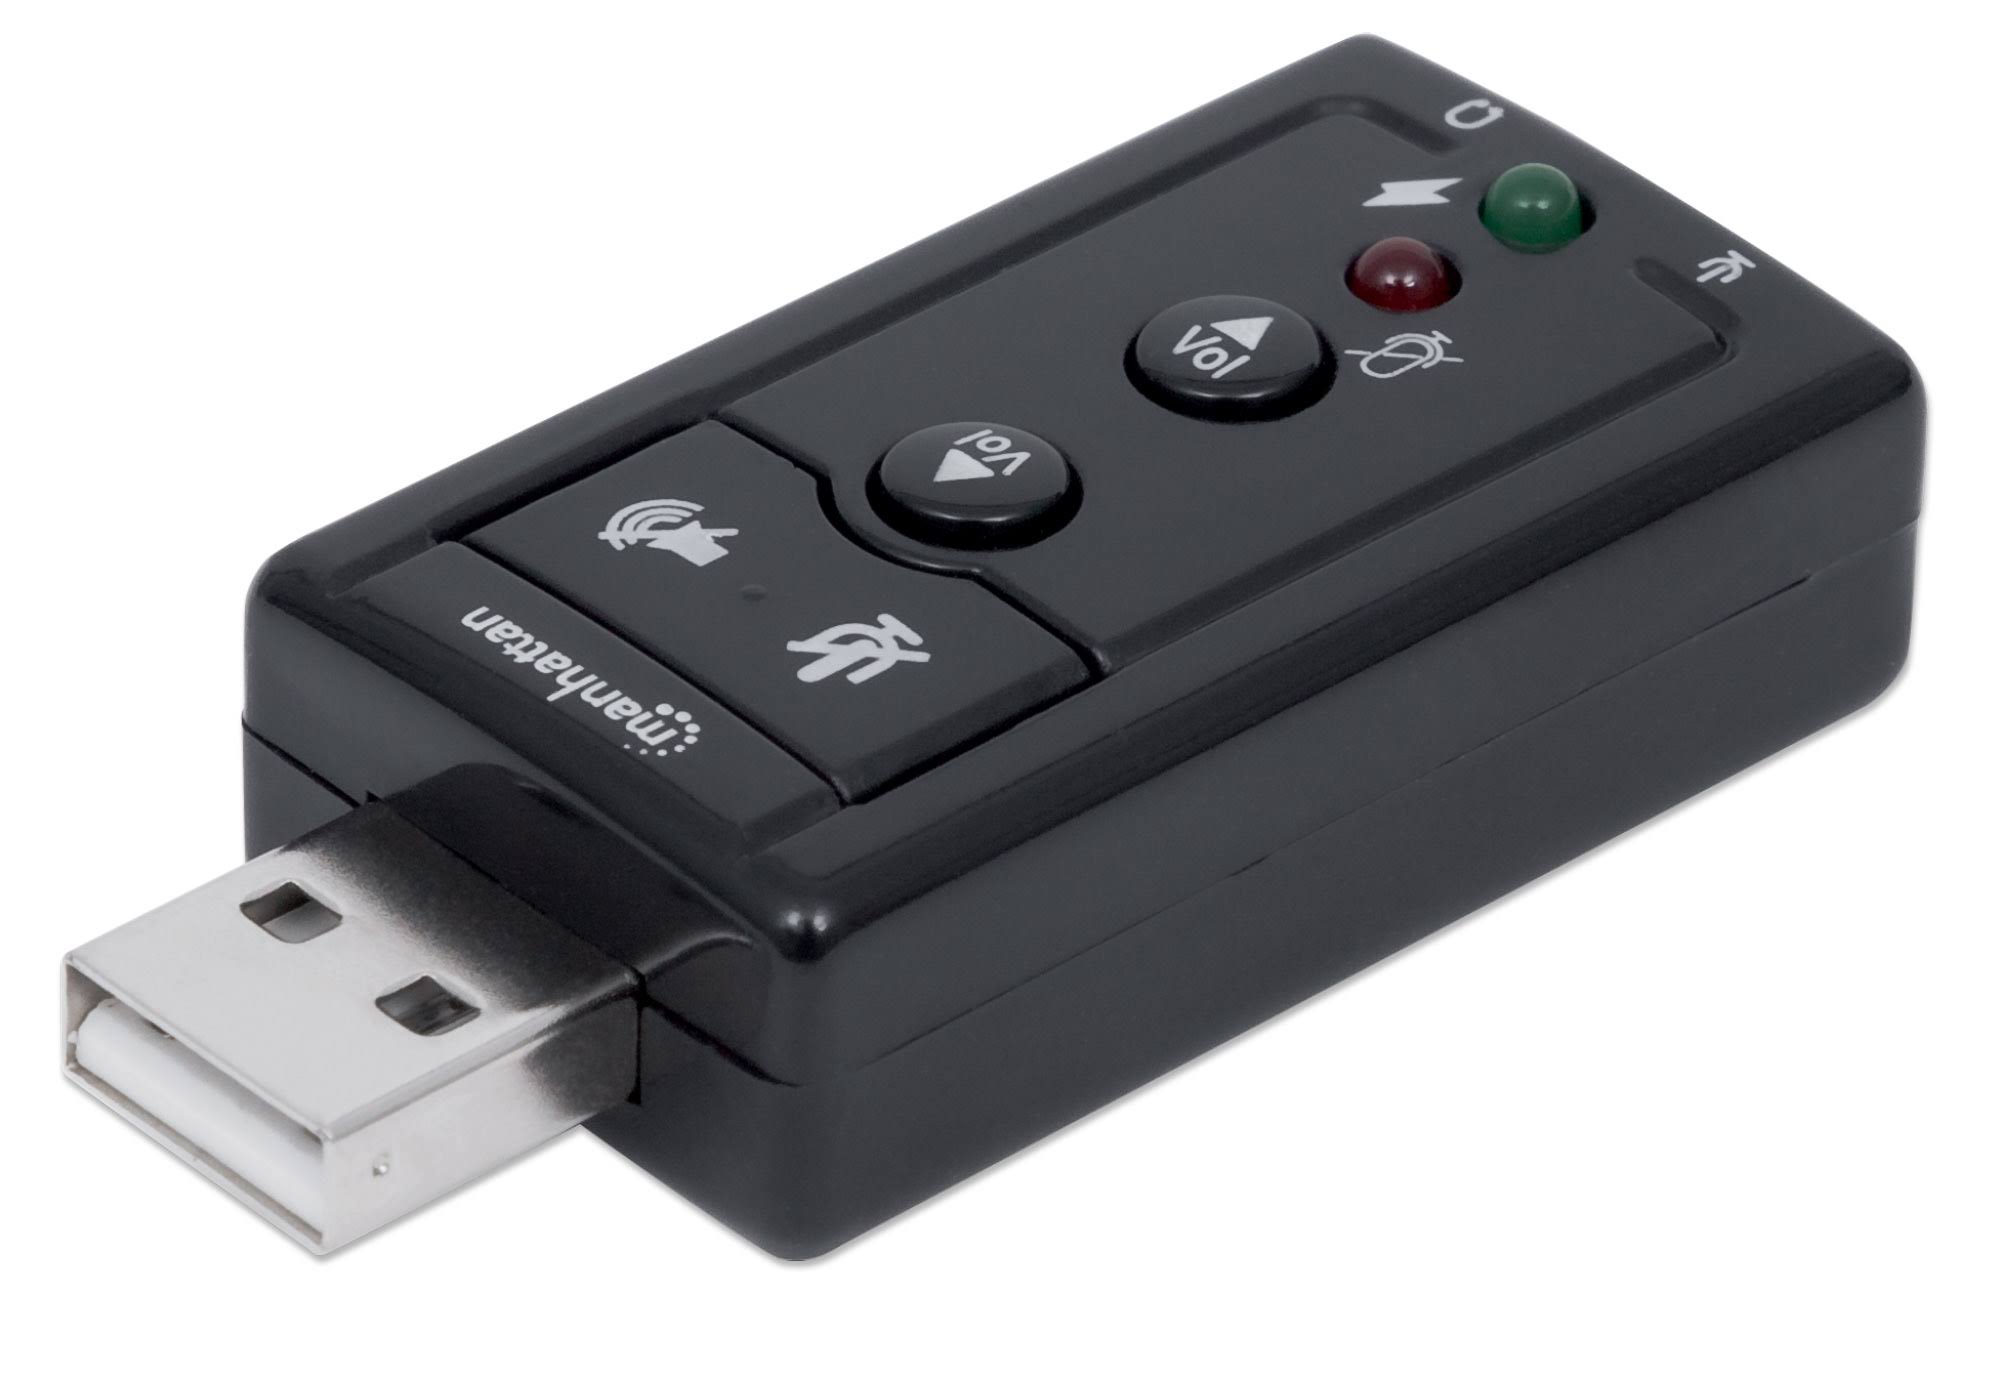 Manhattan Hi-Speed USB 2.0 3D 7.1 Sound Adapter, External Sound Card with 3.5 mm